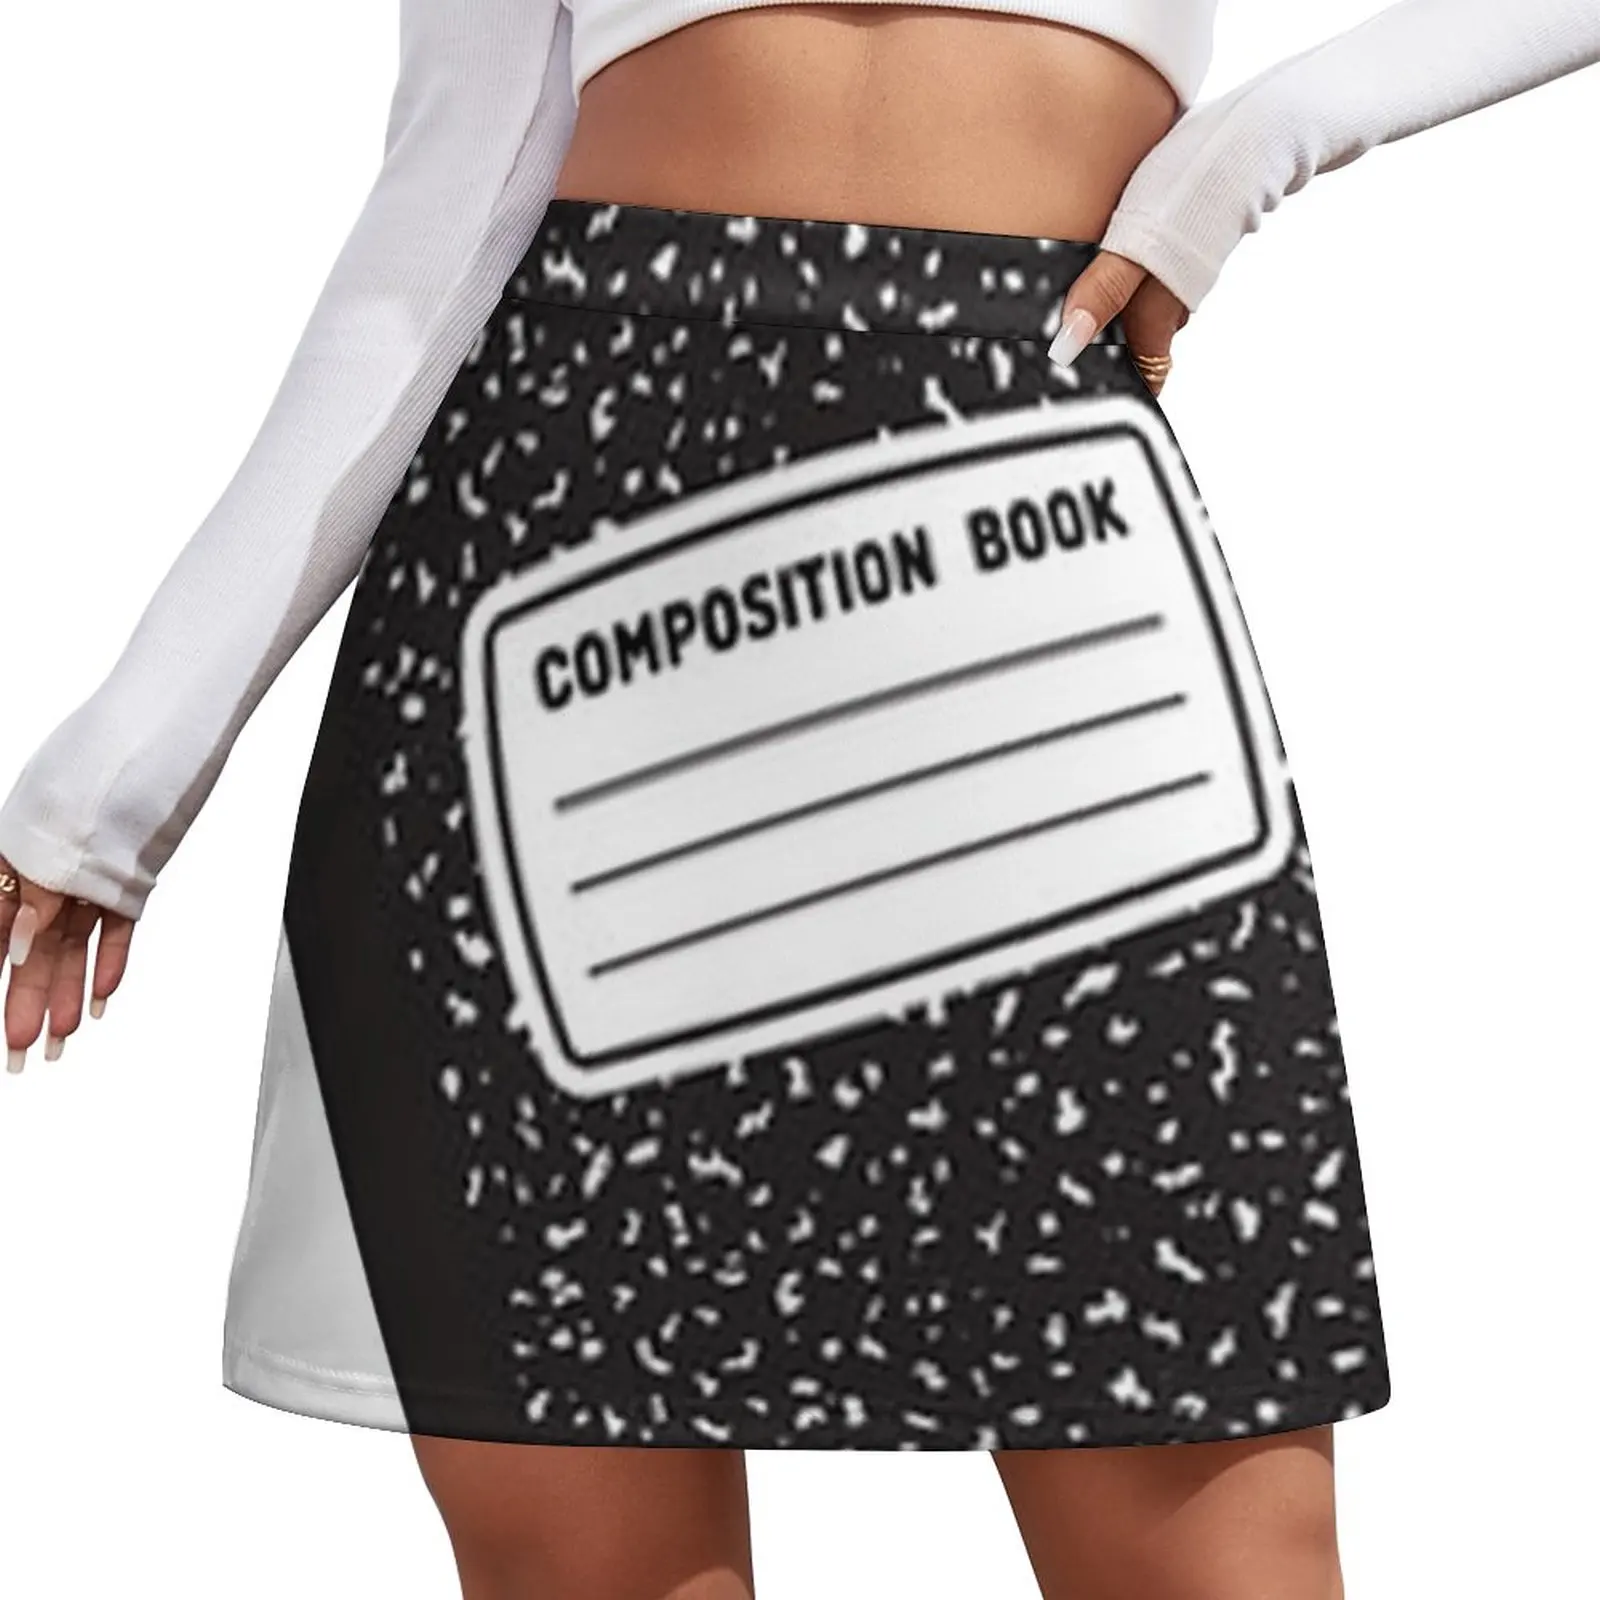 Writing - Composition Book Mini Skirt midi skirt for women Skirt satin on writing